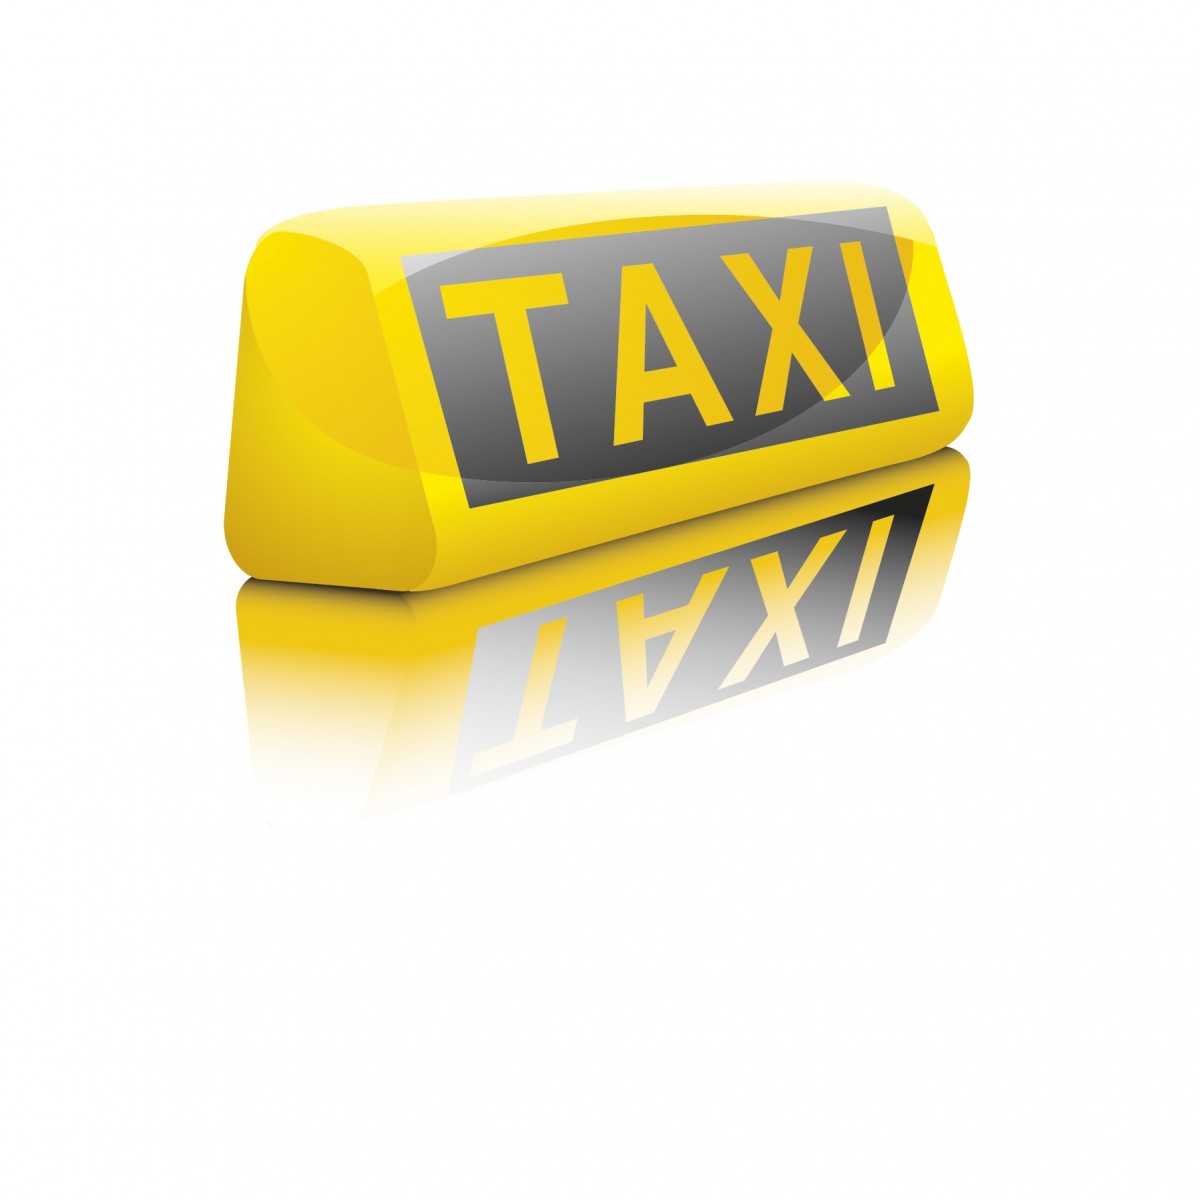 такси в Подольском районе недорого